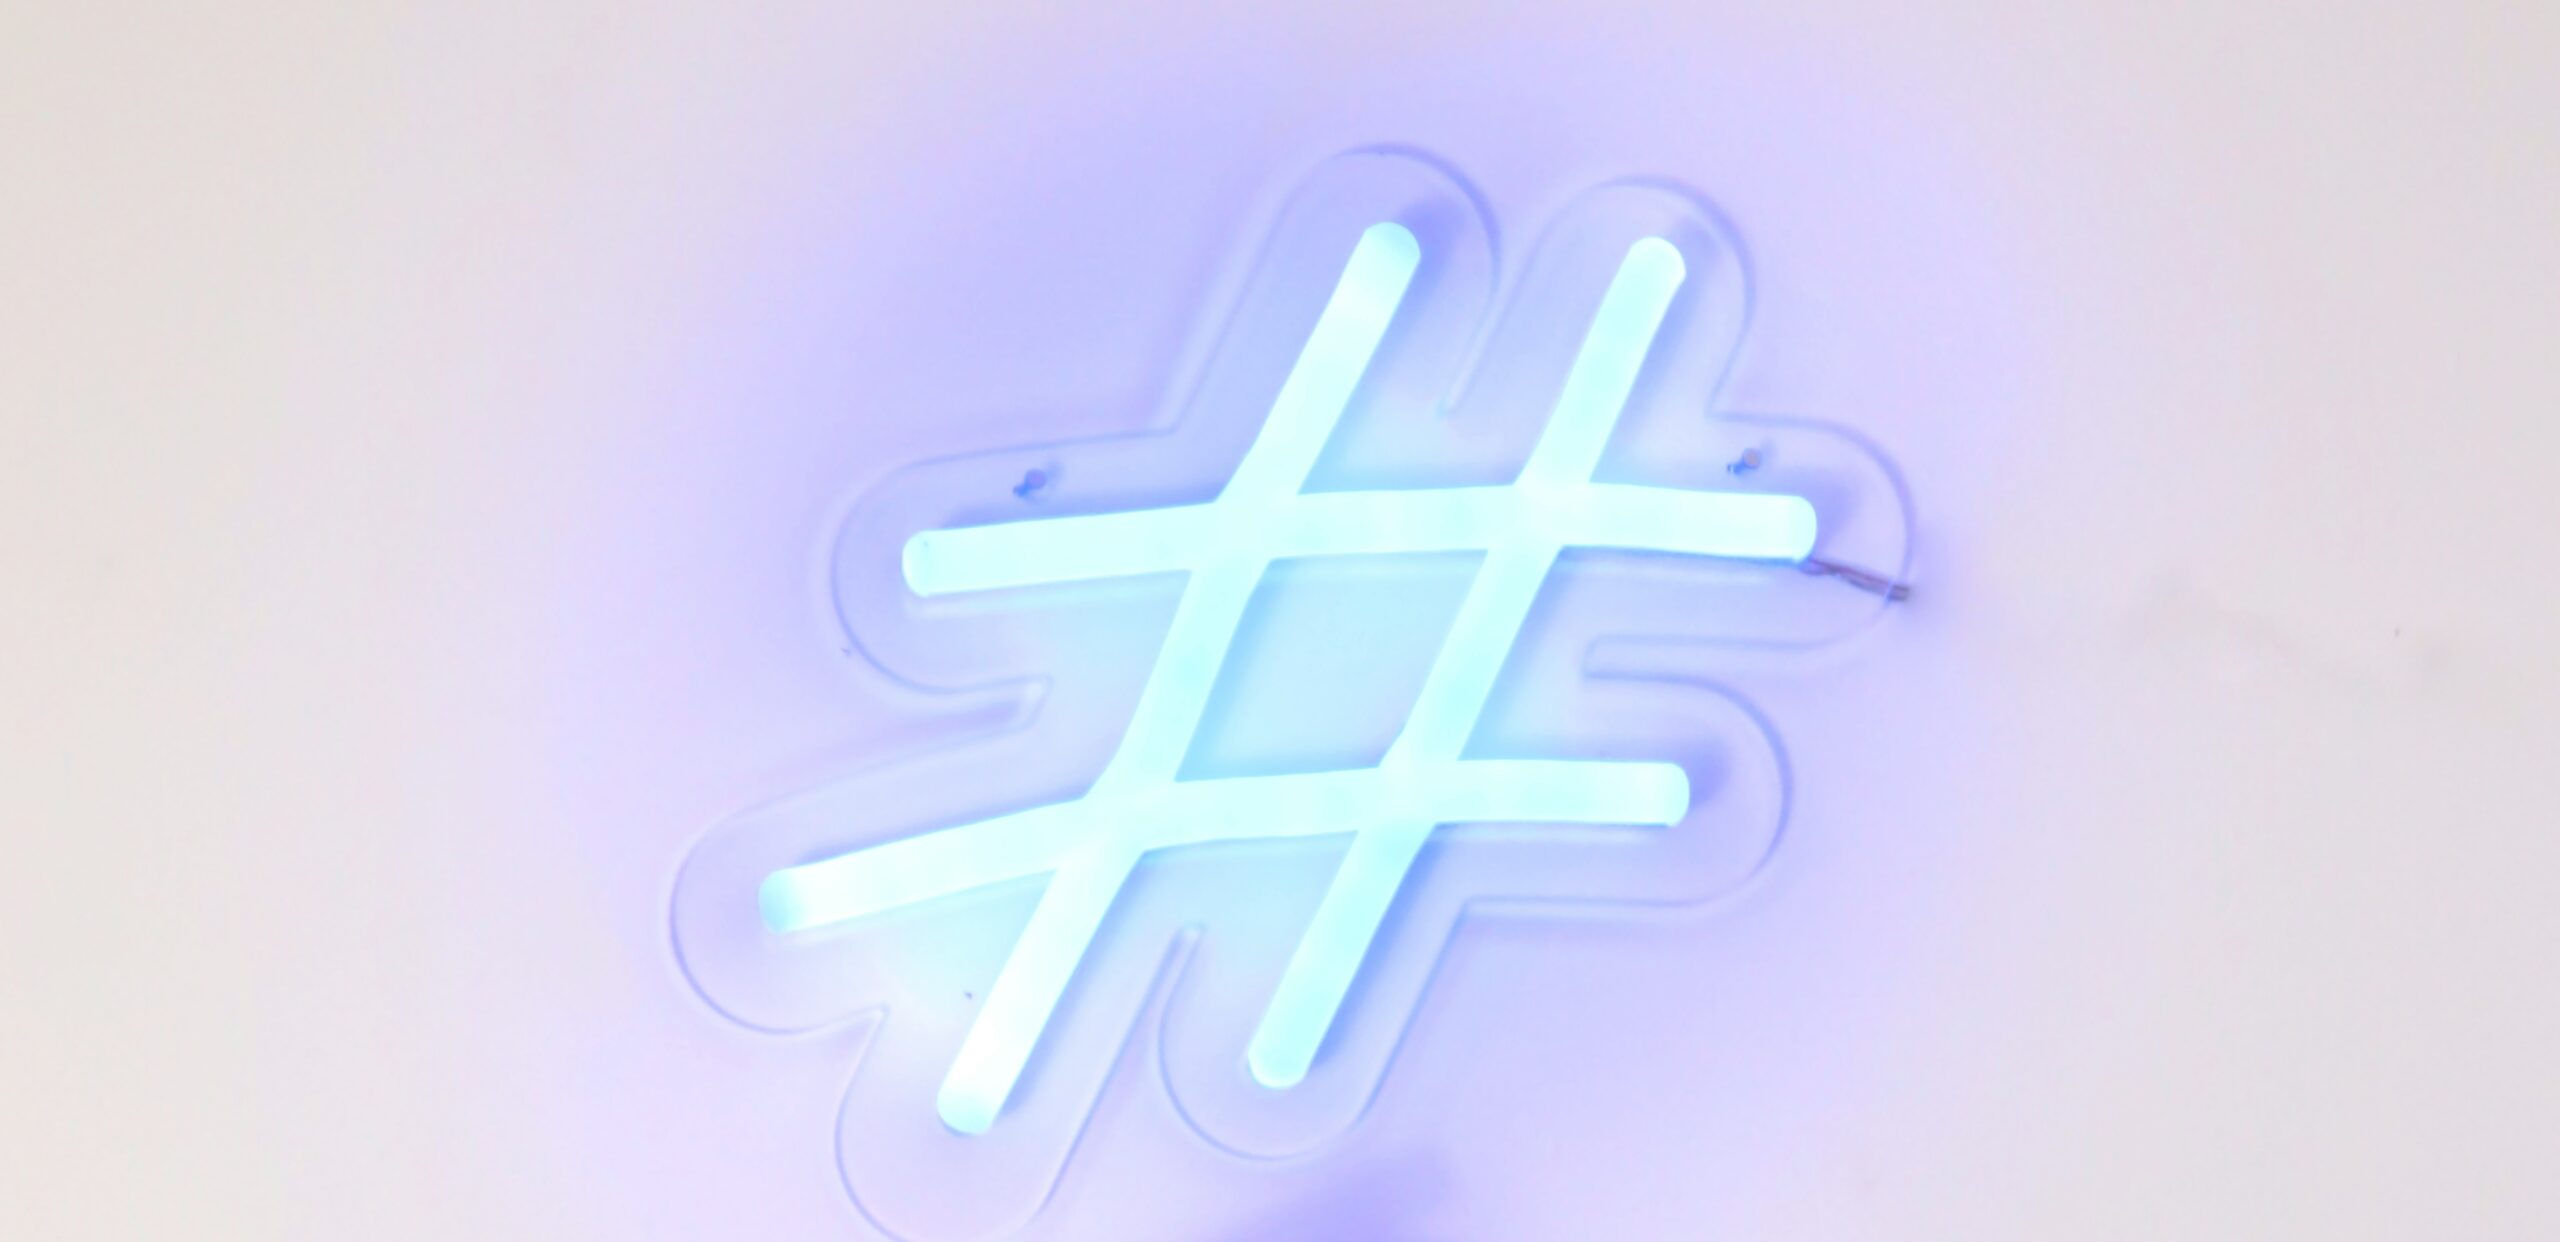 Świecący neon w kształcie znaku hashtag na rozmytym białym tle.